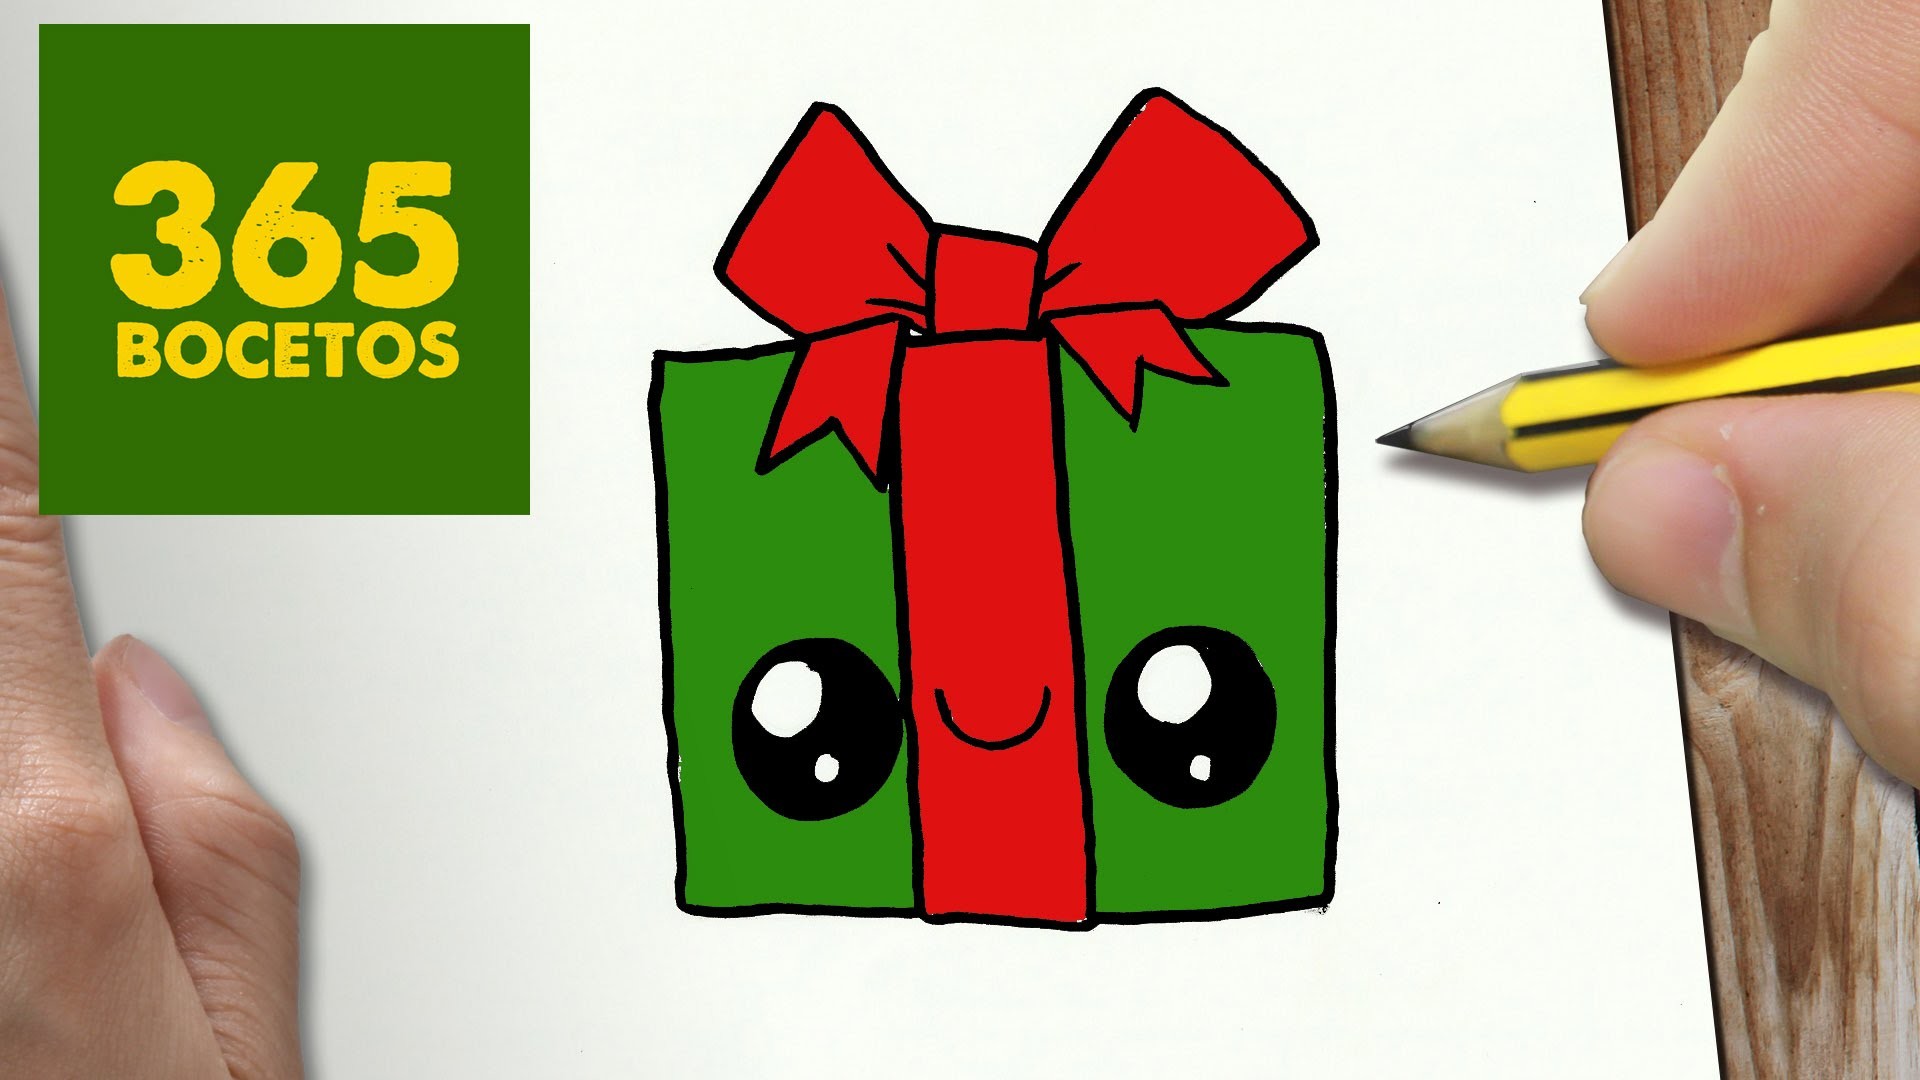 COMO DIBUJAR UN REGALO PARA NAVIDAD PASO A PASO: Dibujos kawaii navideños - How to draw a gift